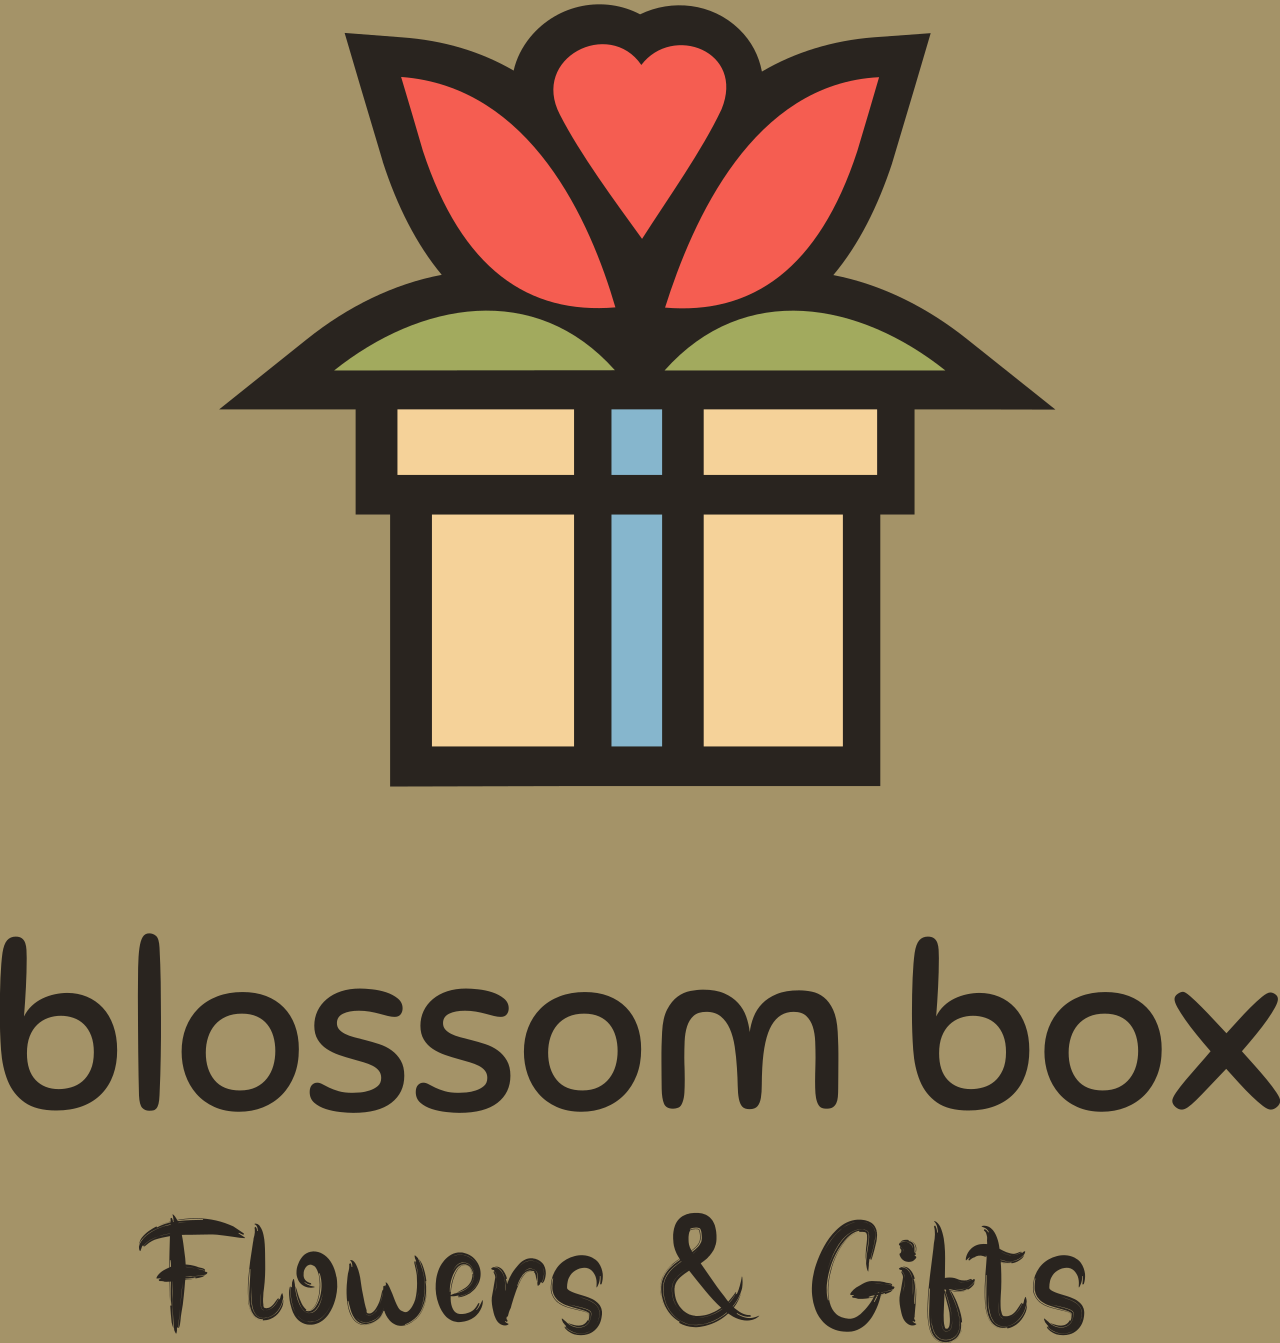 blossom box's logo